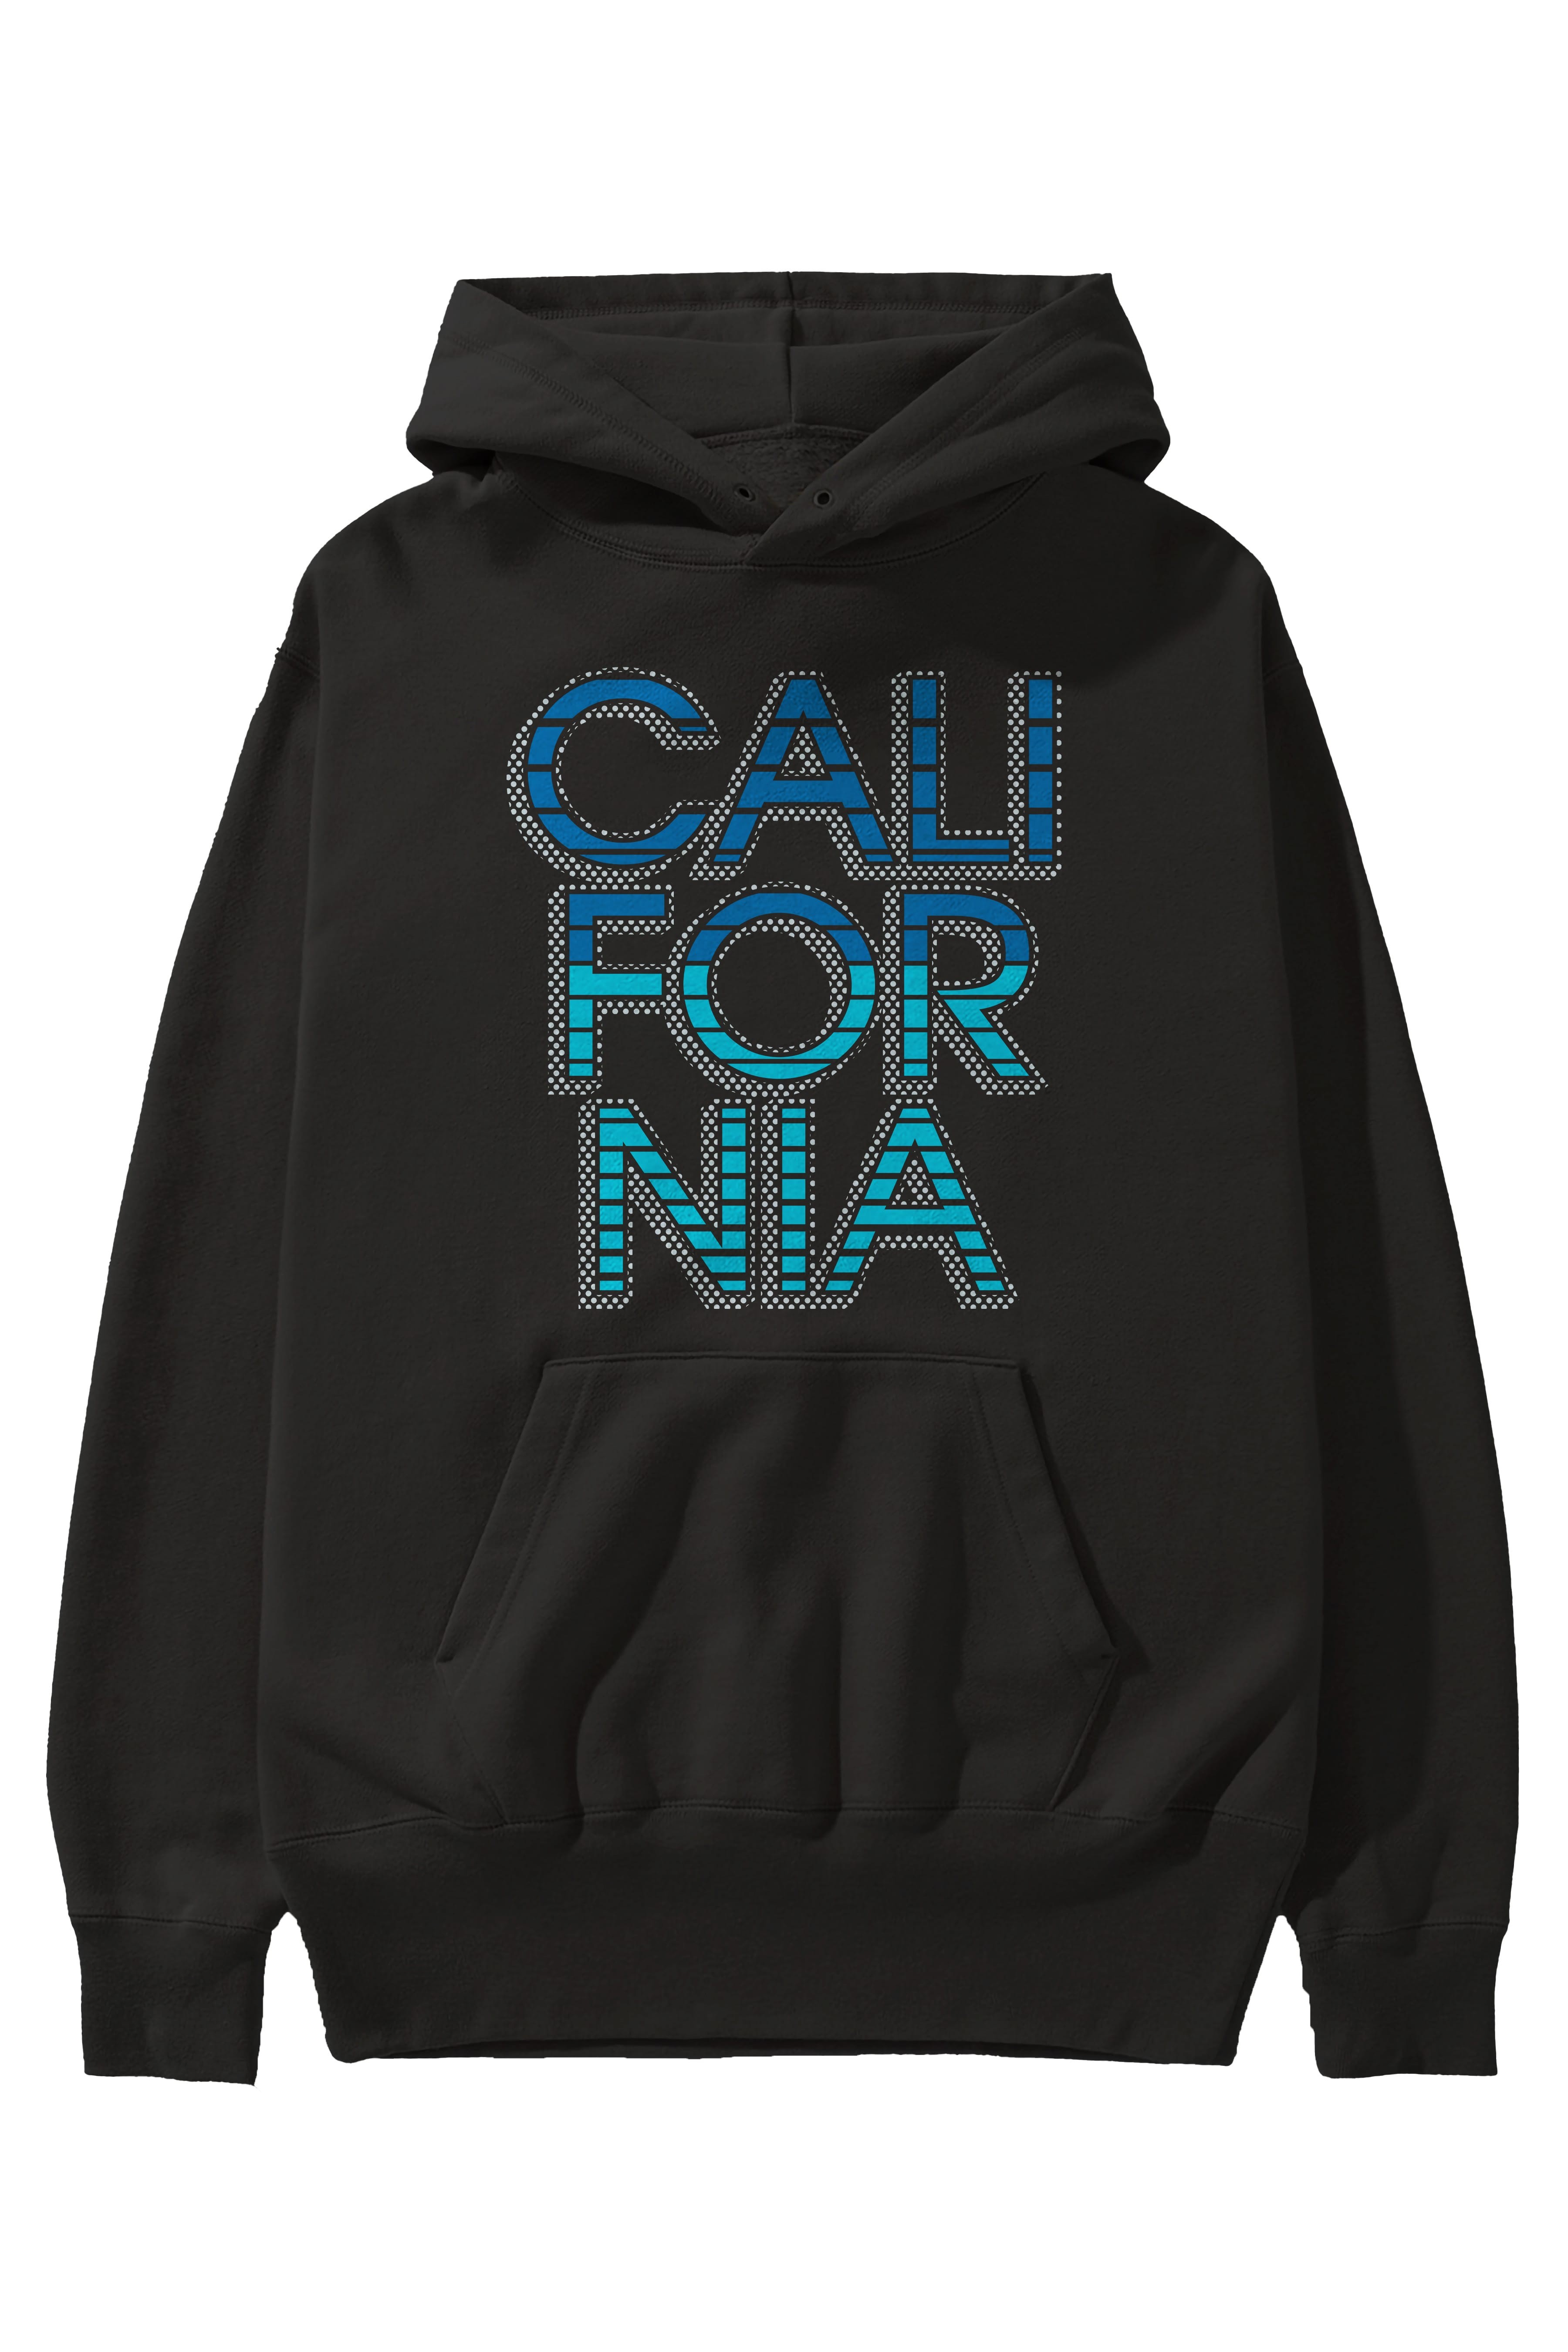 California 3 Ön Baskılı Oversize Hoodie Kapüşonlu Sweatshirt Erkek Kadın Unisex